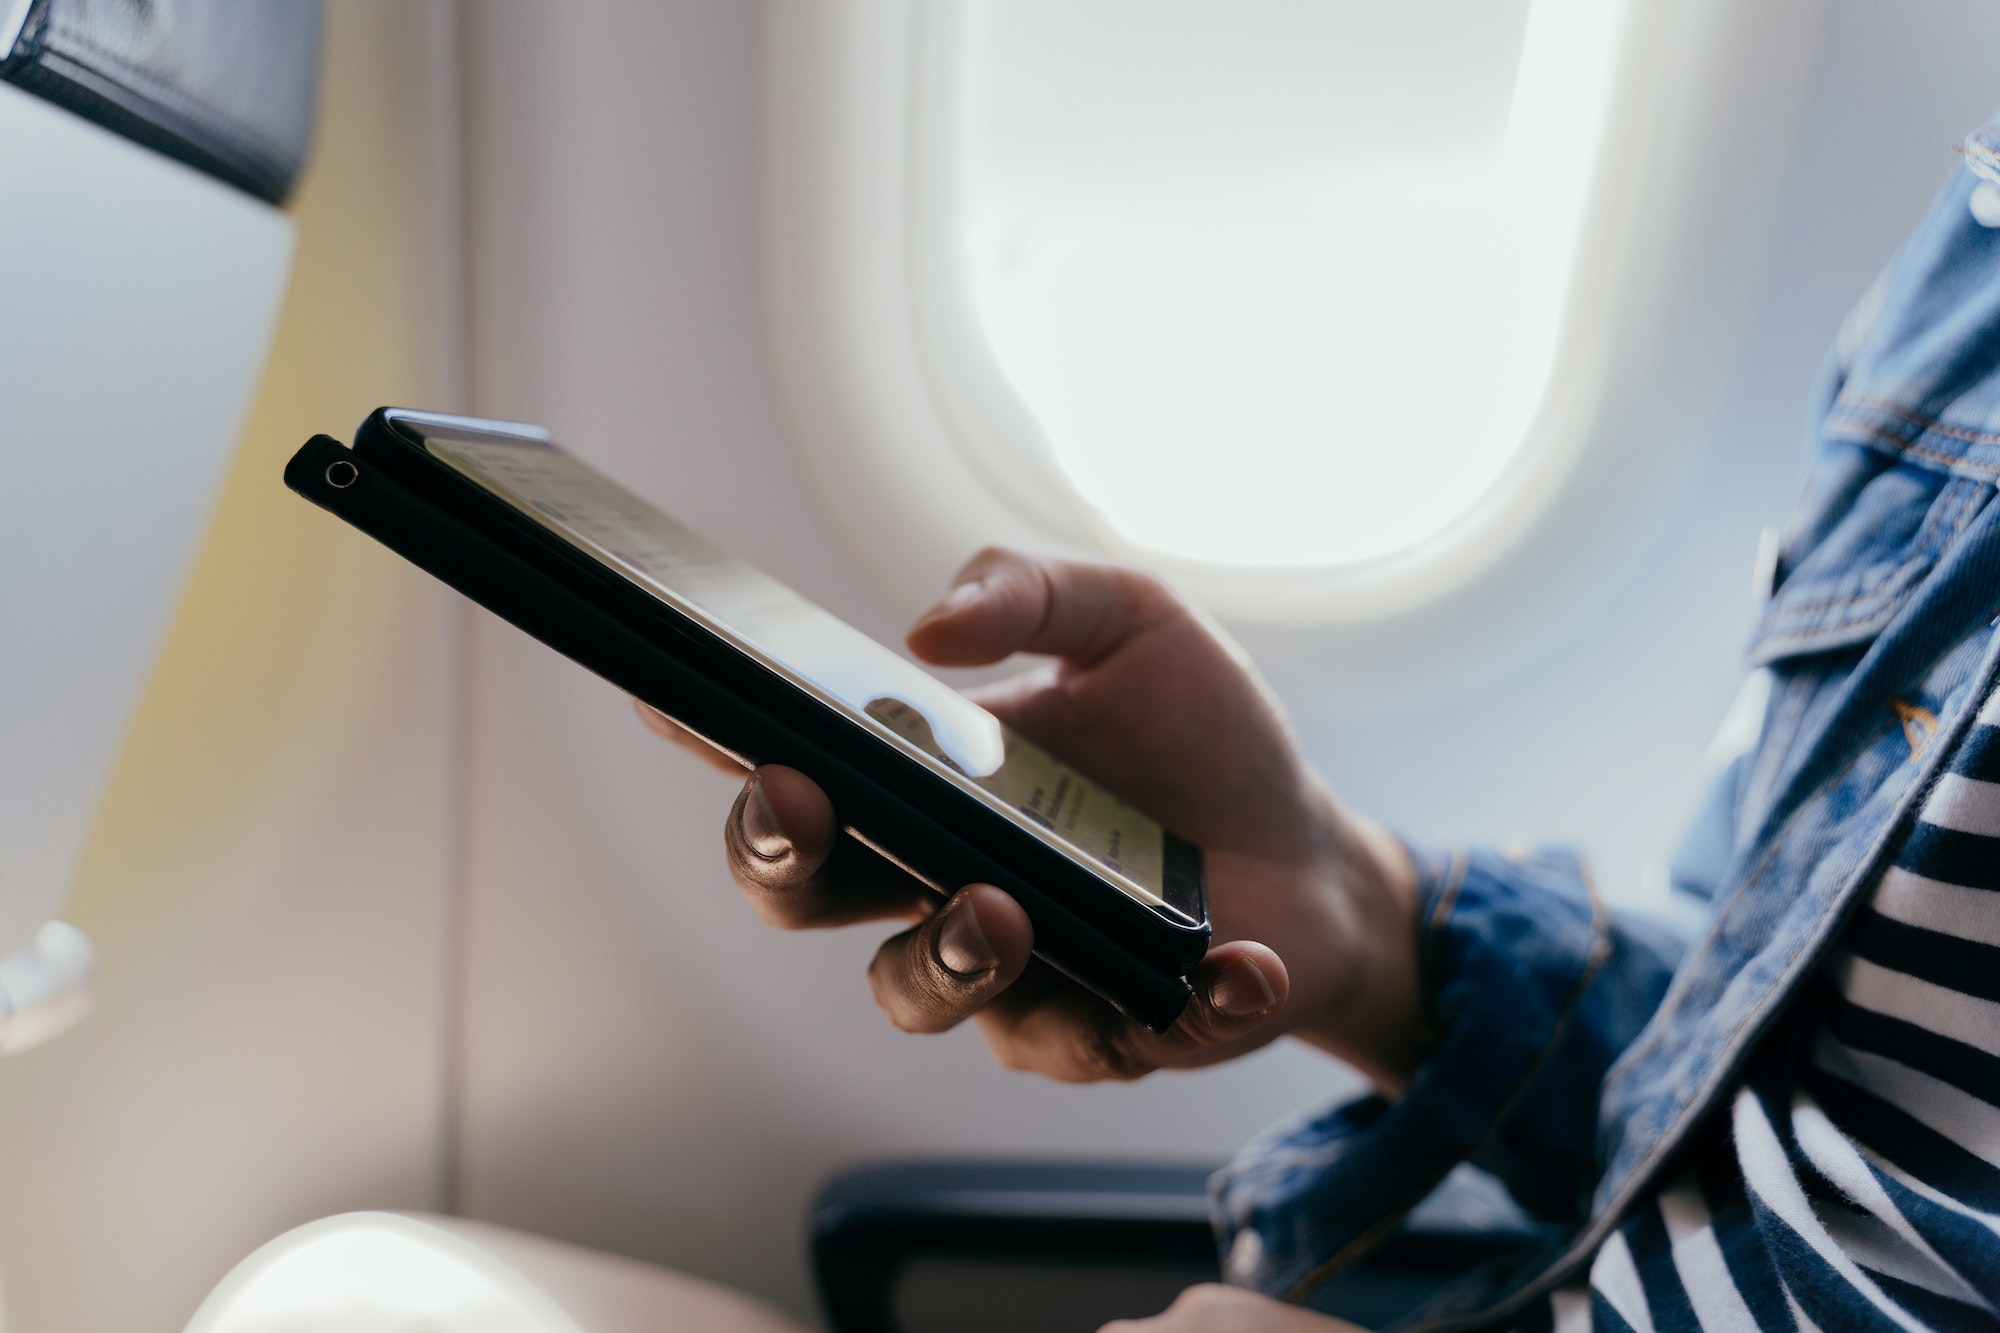 5G llega a los aviones, así es como se conectarán los móviles en vuelo